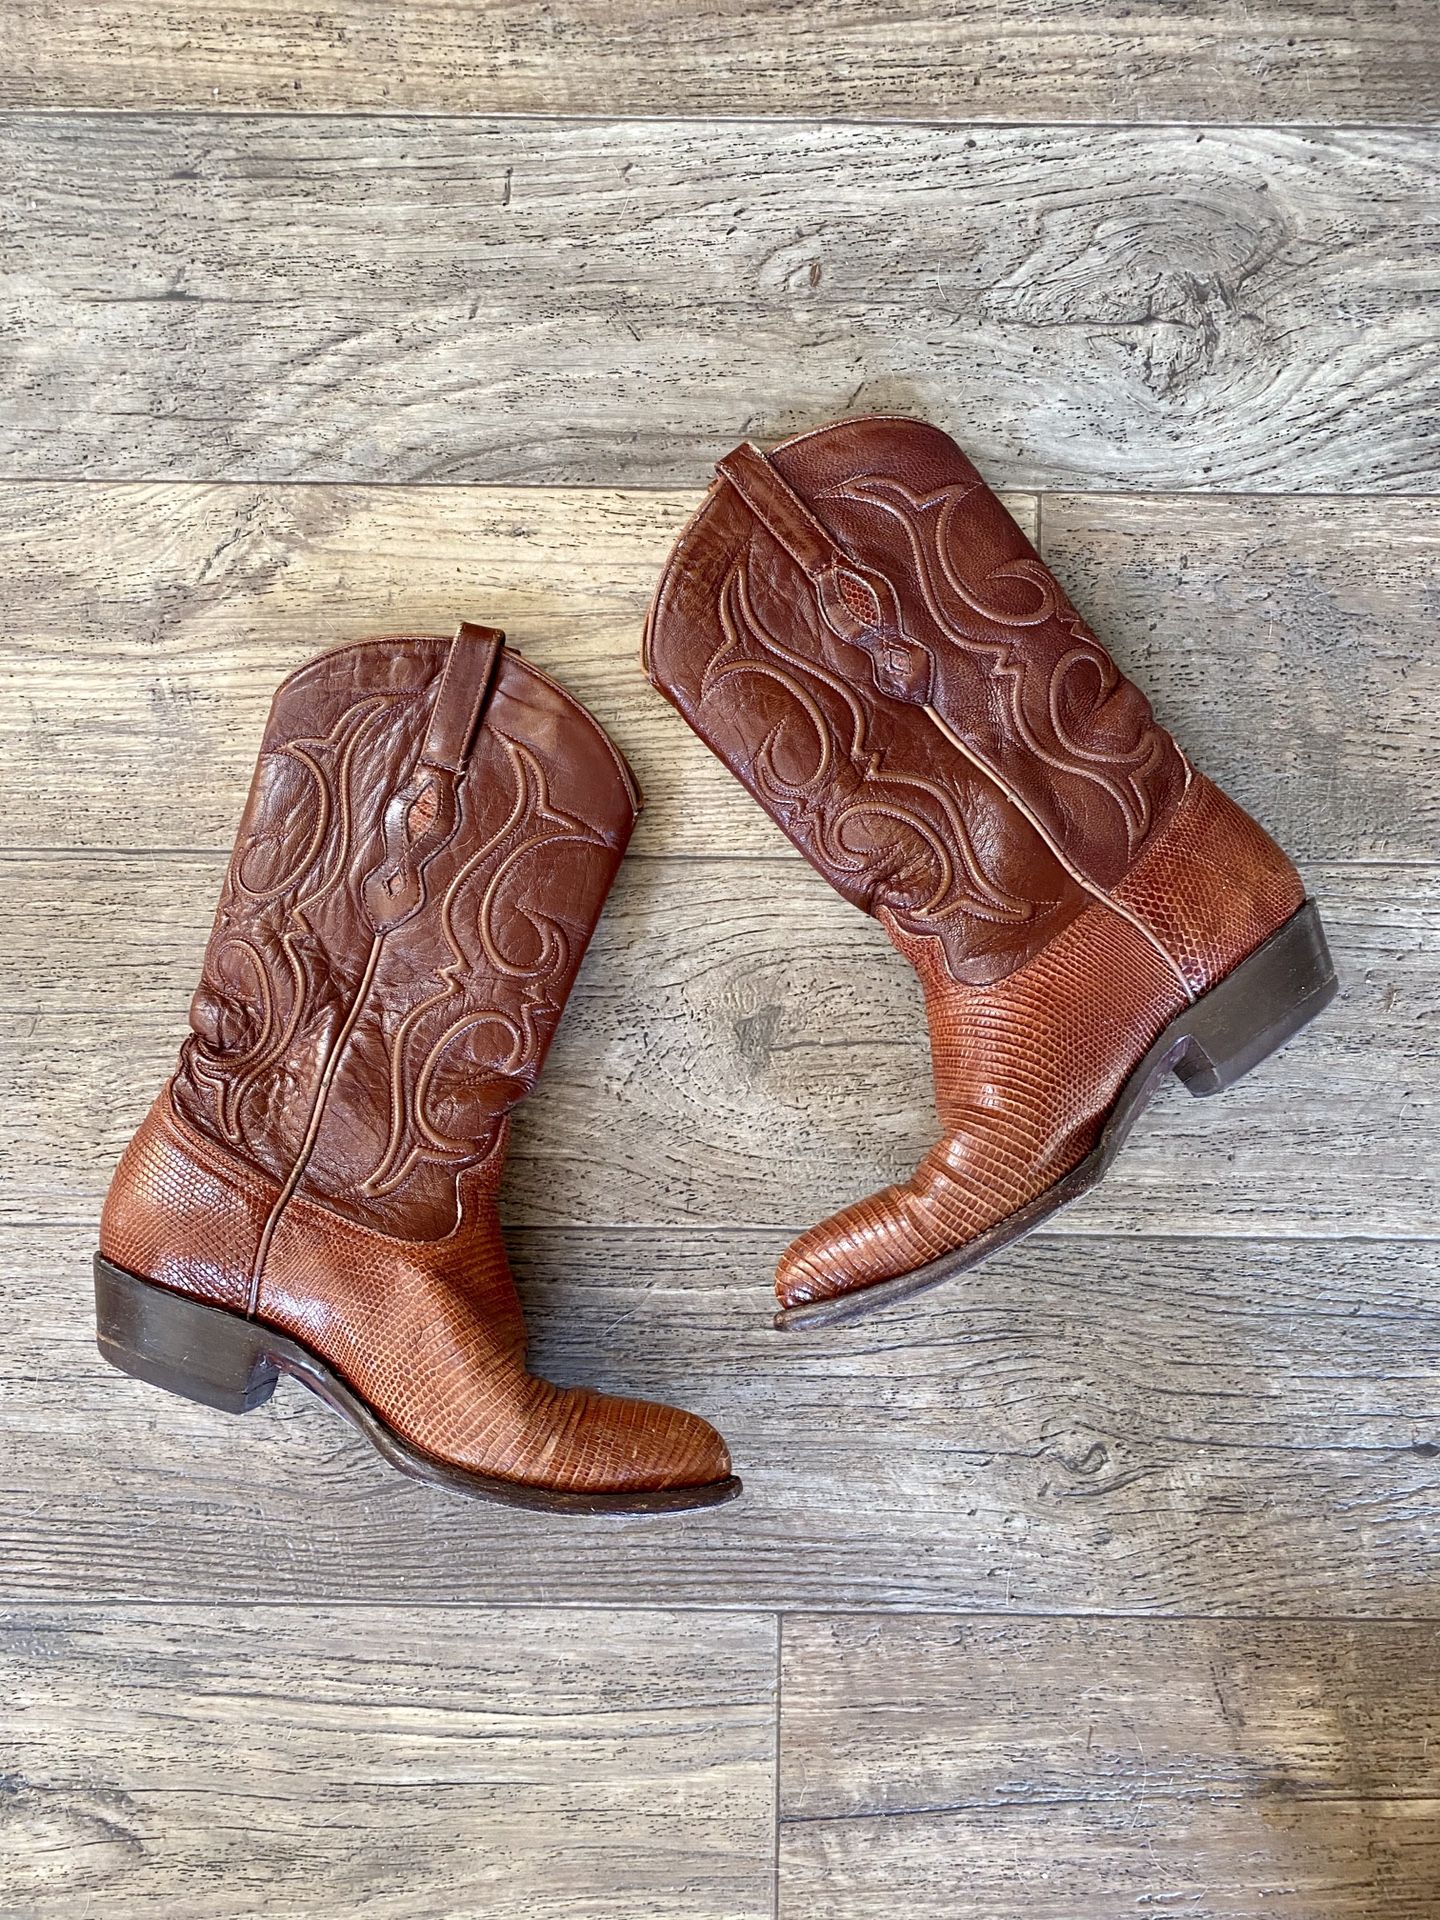 Los Altos brown Teju lizard western cowboy boots